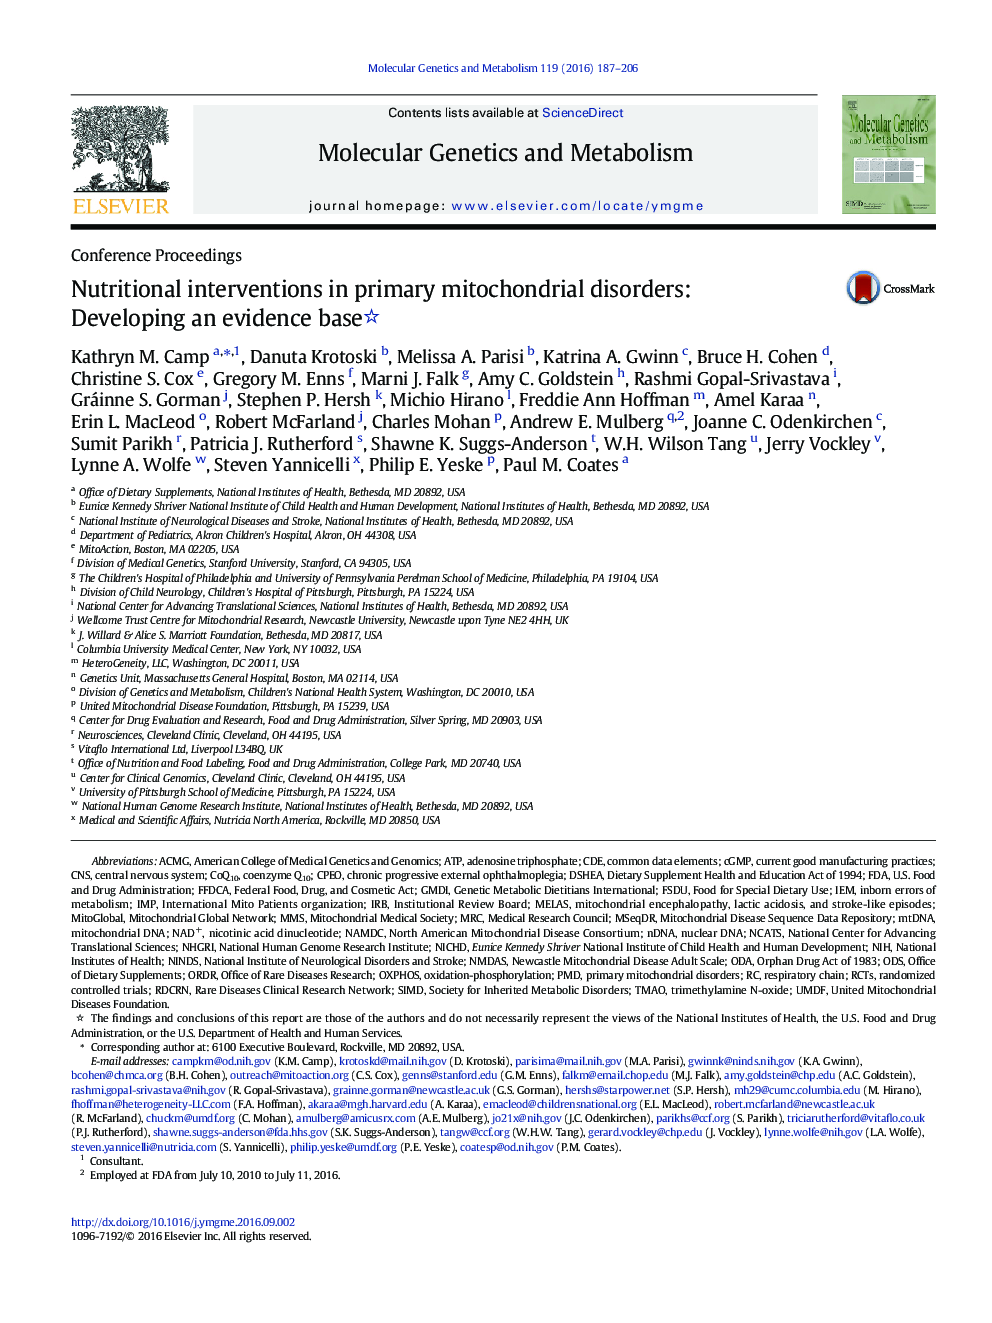 مقالات کنفرانس مداخلات تغذیه ای در اختلالات متاستاز اولیه میتوکندری: ایجاد یک پایگاه مبتنی بر شواهد 